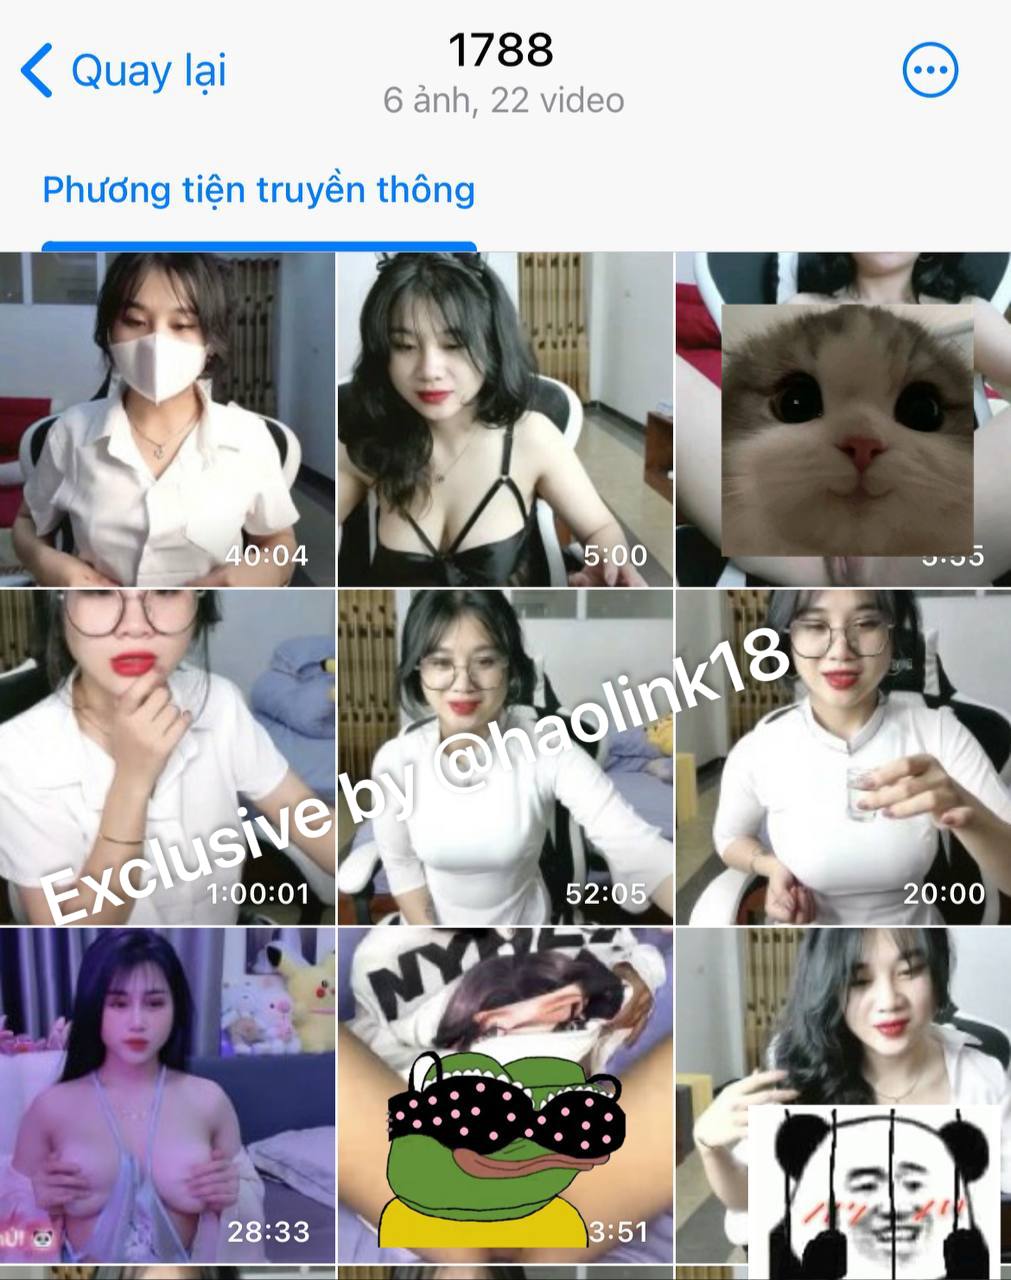  FULL clip THỦ DÂM Anna Gấu 33 livestream game mặc áo dài hot nhất tháng